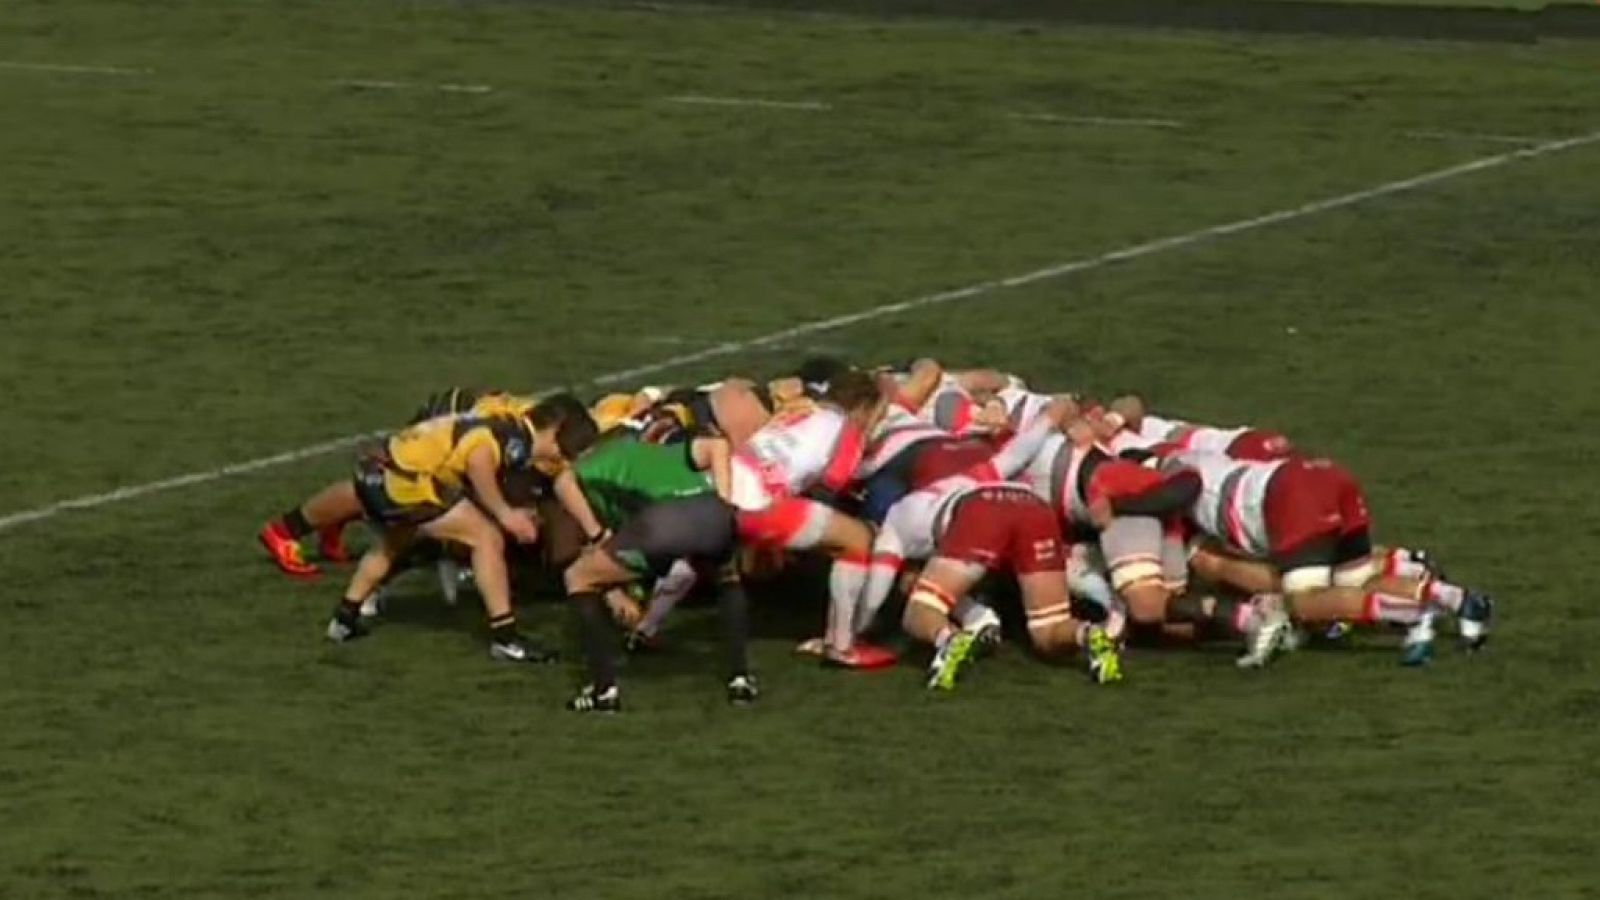 Rugby - Liga División de Honor Masculina 16ª jornada: Ordizia Re - Aparejadores Burgos